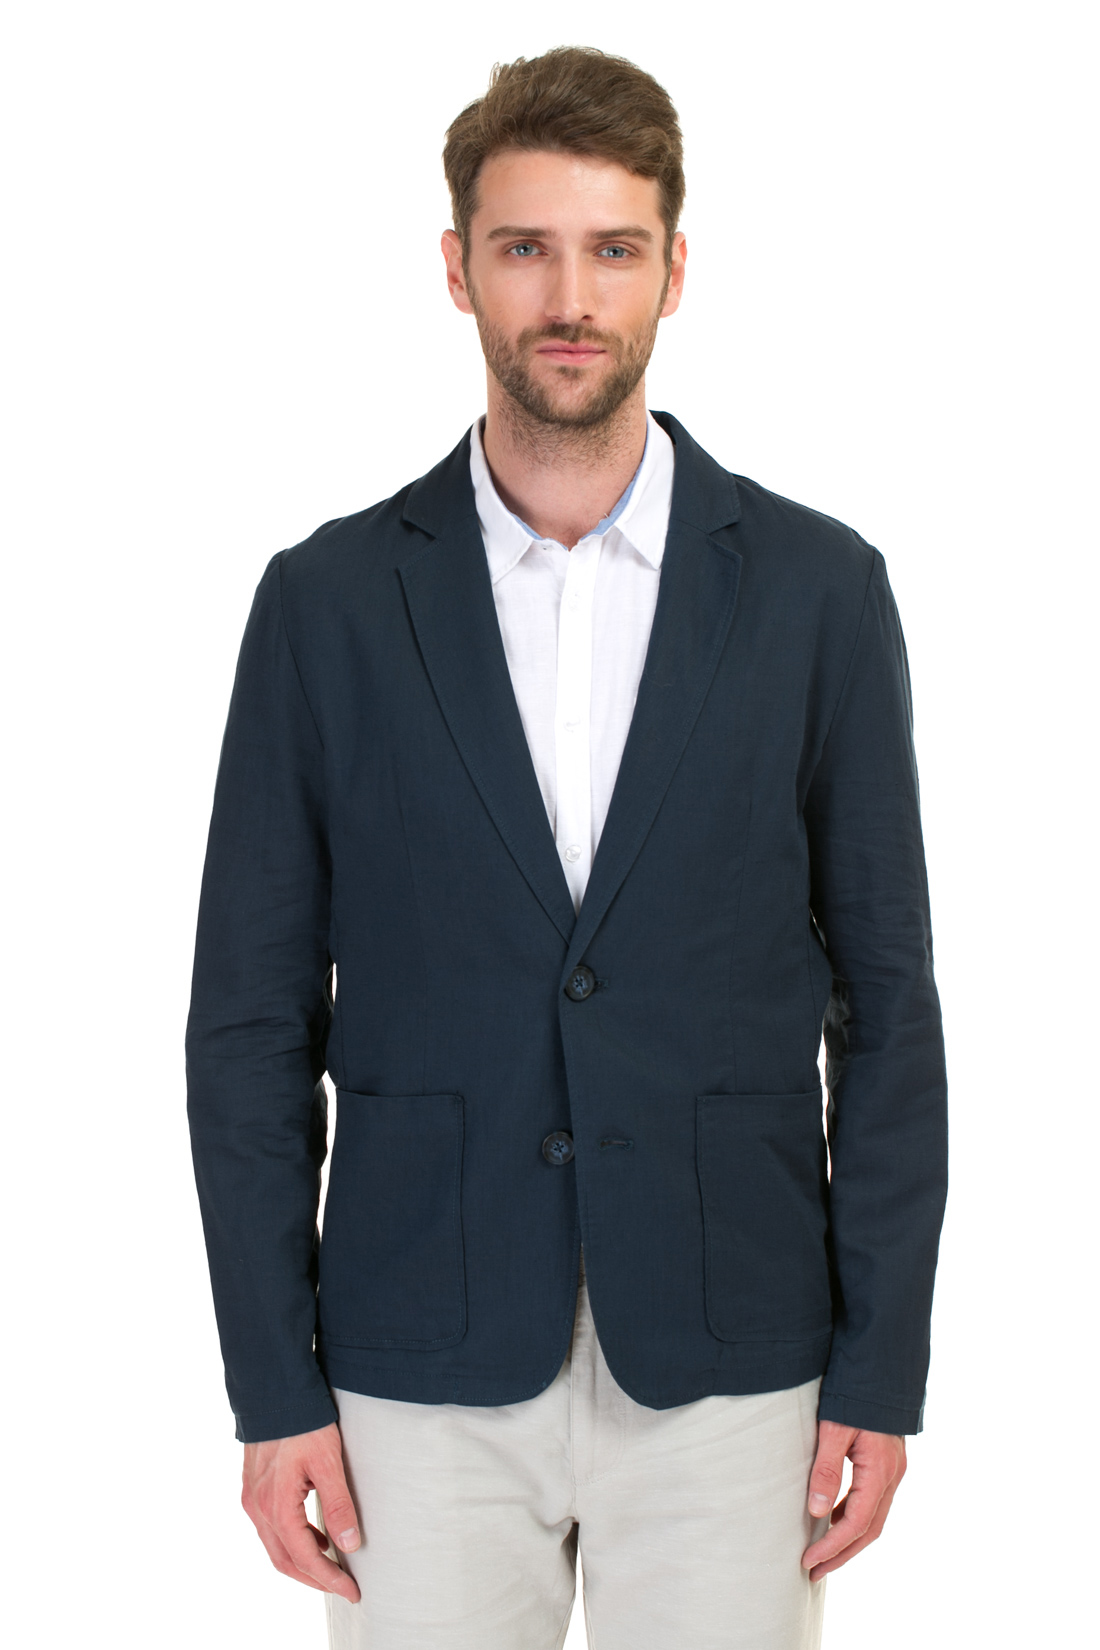 Пиджак из натуральных волокон (арт. baon B627002), размер S, цвет синий